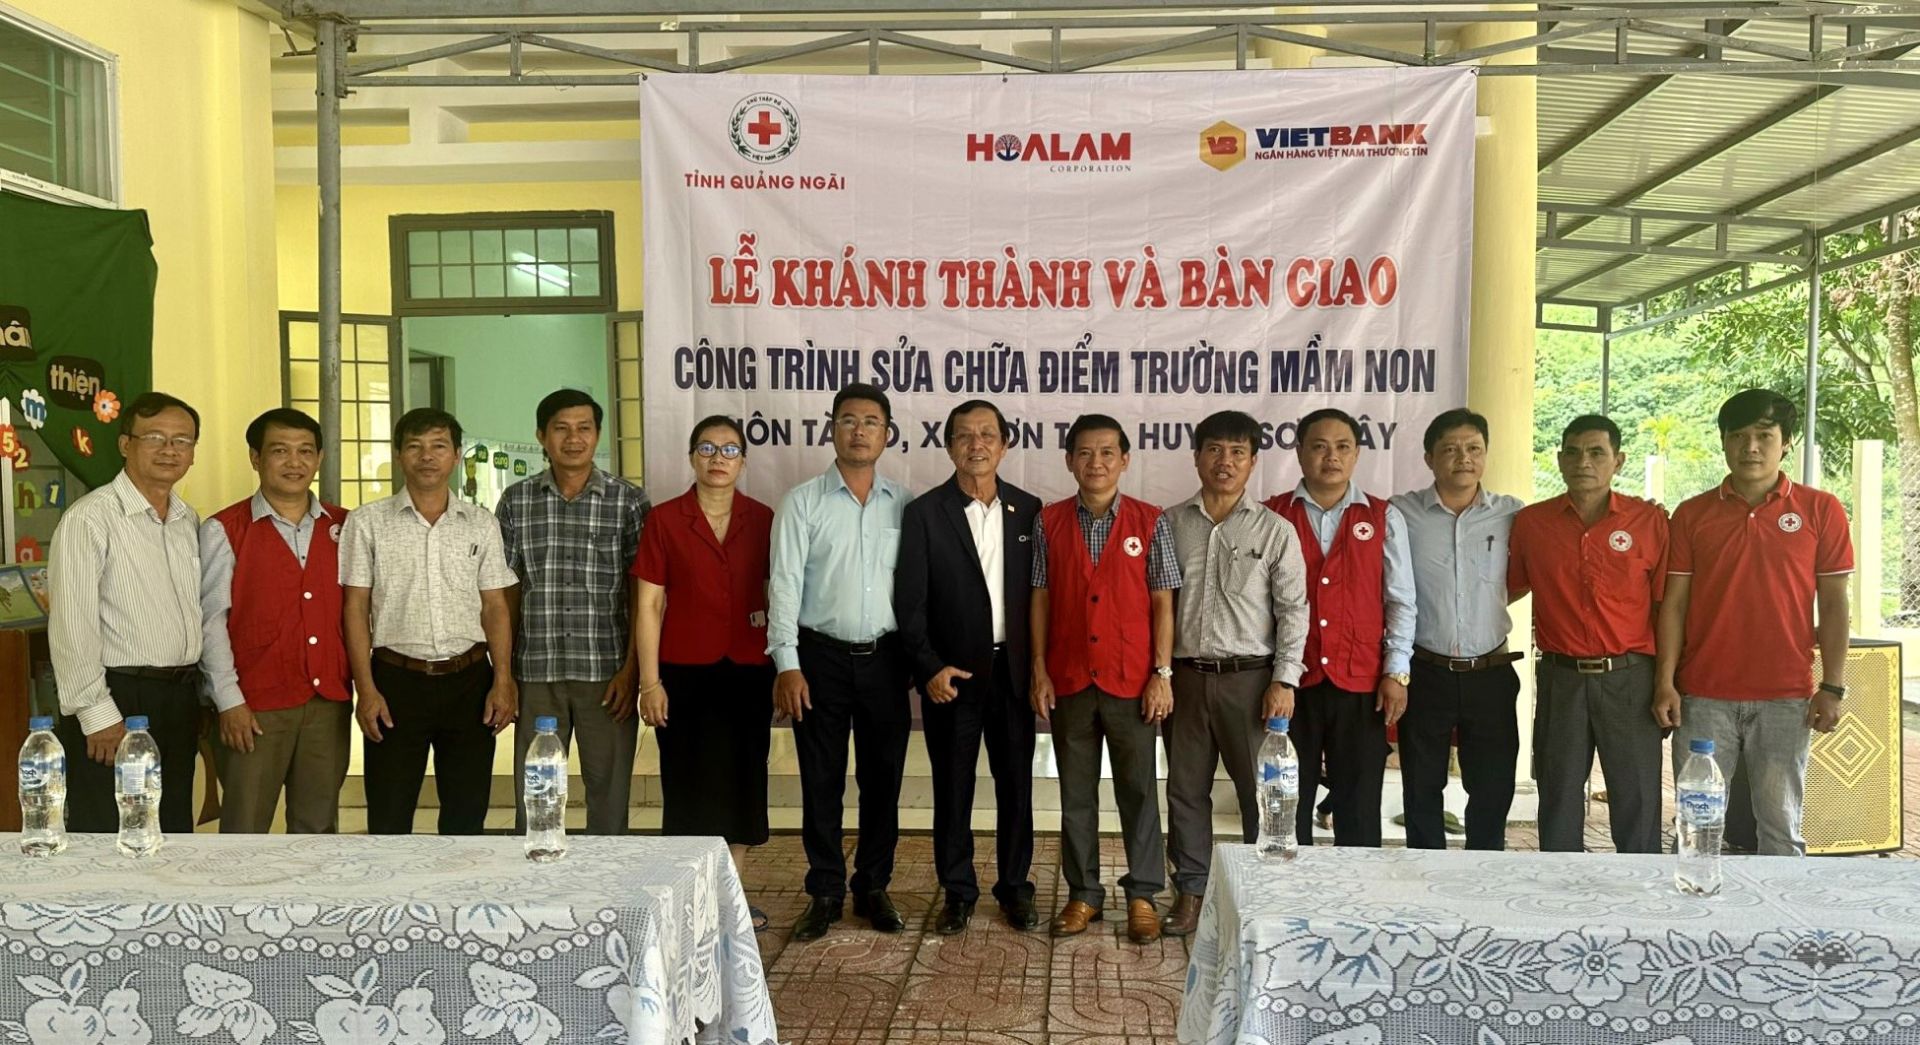 Lễ Khánh thành tổ chức bàn giao công trình sửa chữa, nâng cấp điểm trường mầm non thôn Tà Dô, xã Sơn Tân, huyện Sơn Tây với tổng kinh phí tài trợ là 300 triệu đồng.